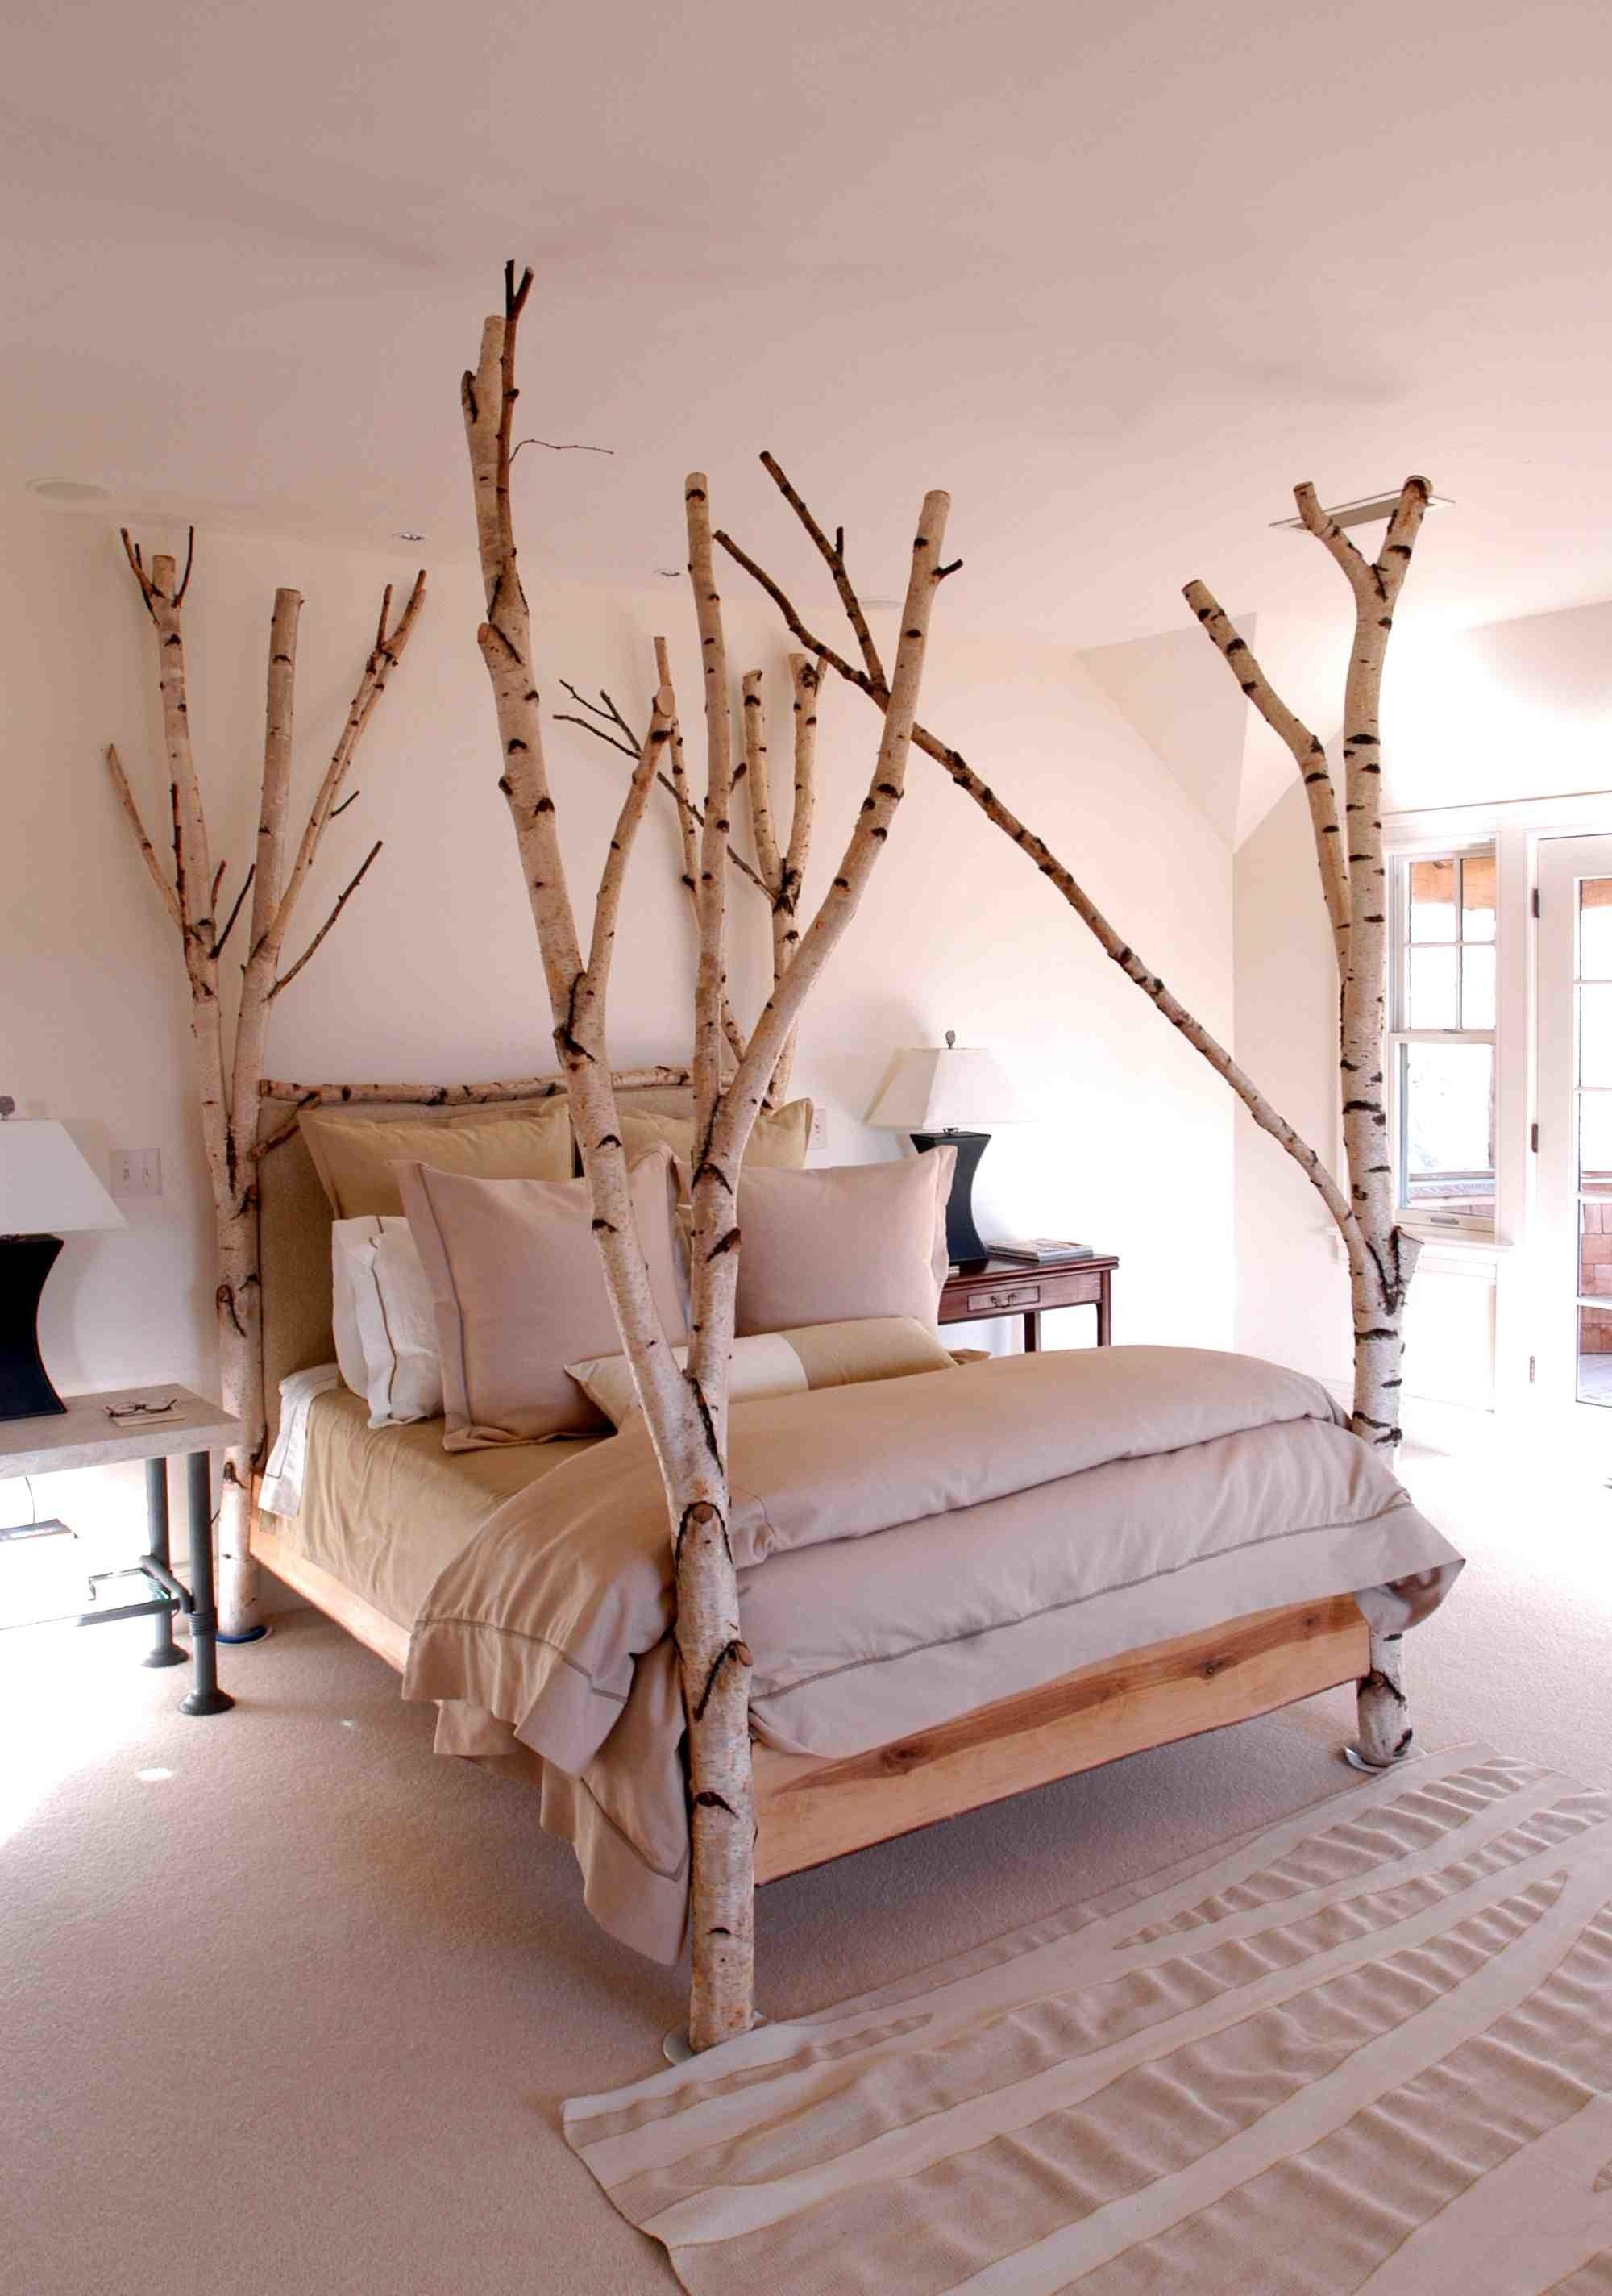 Natural wood bedroom sets